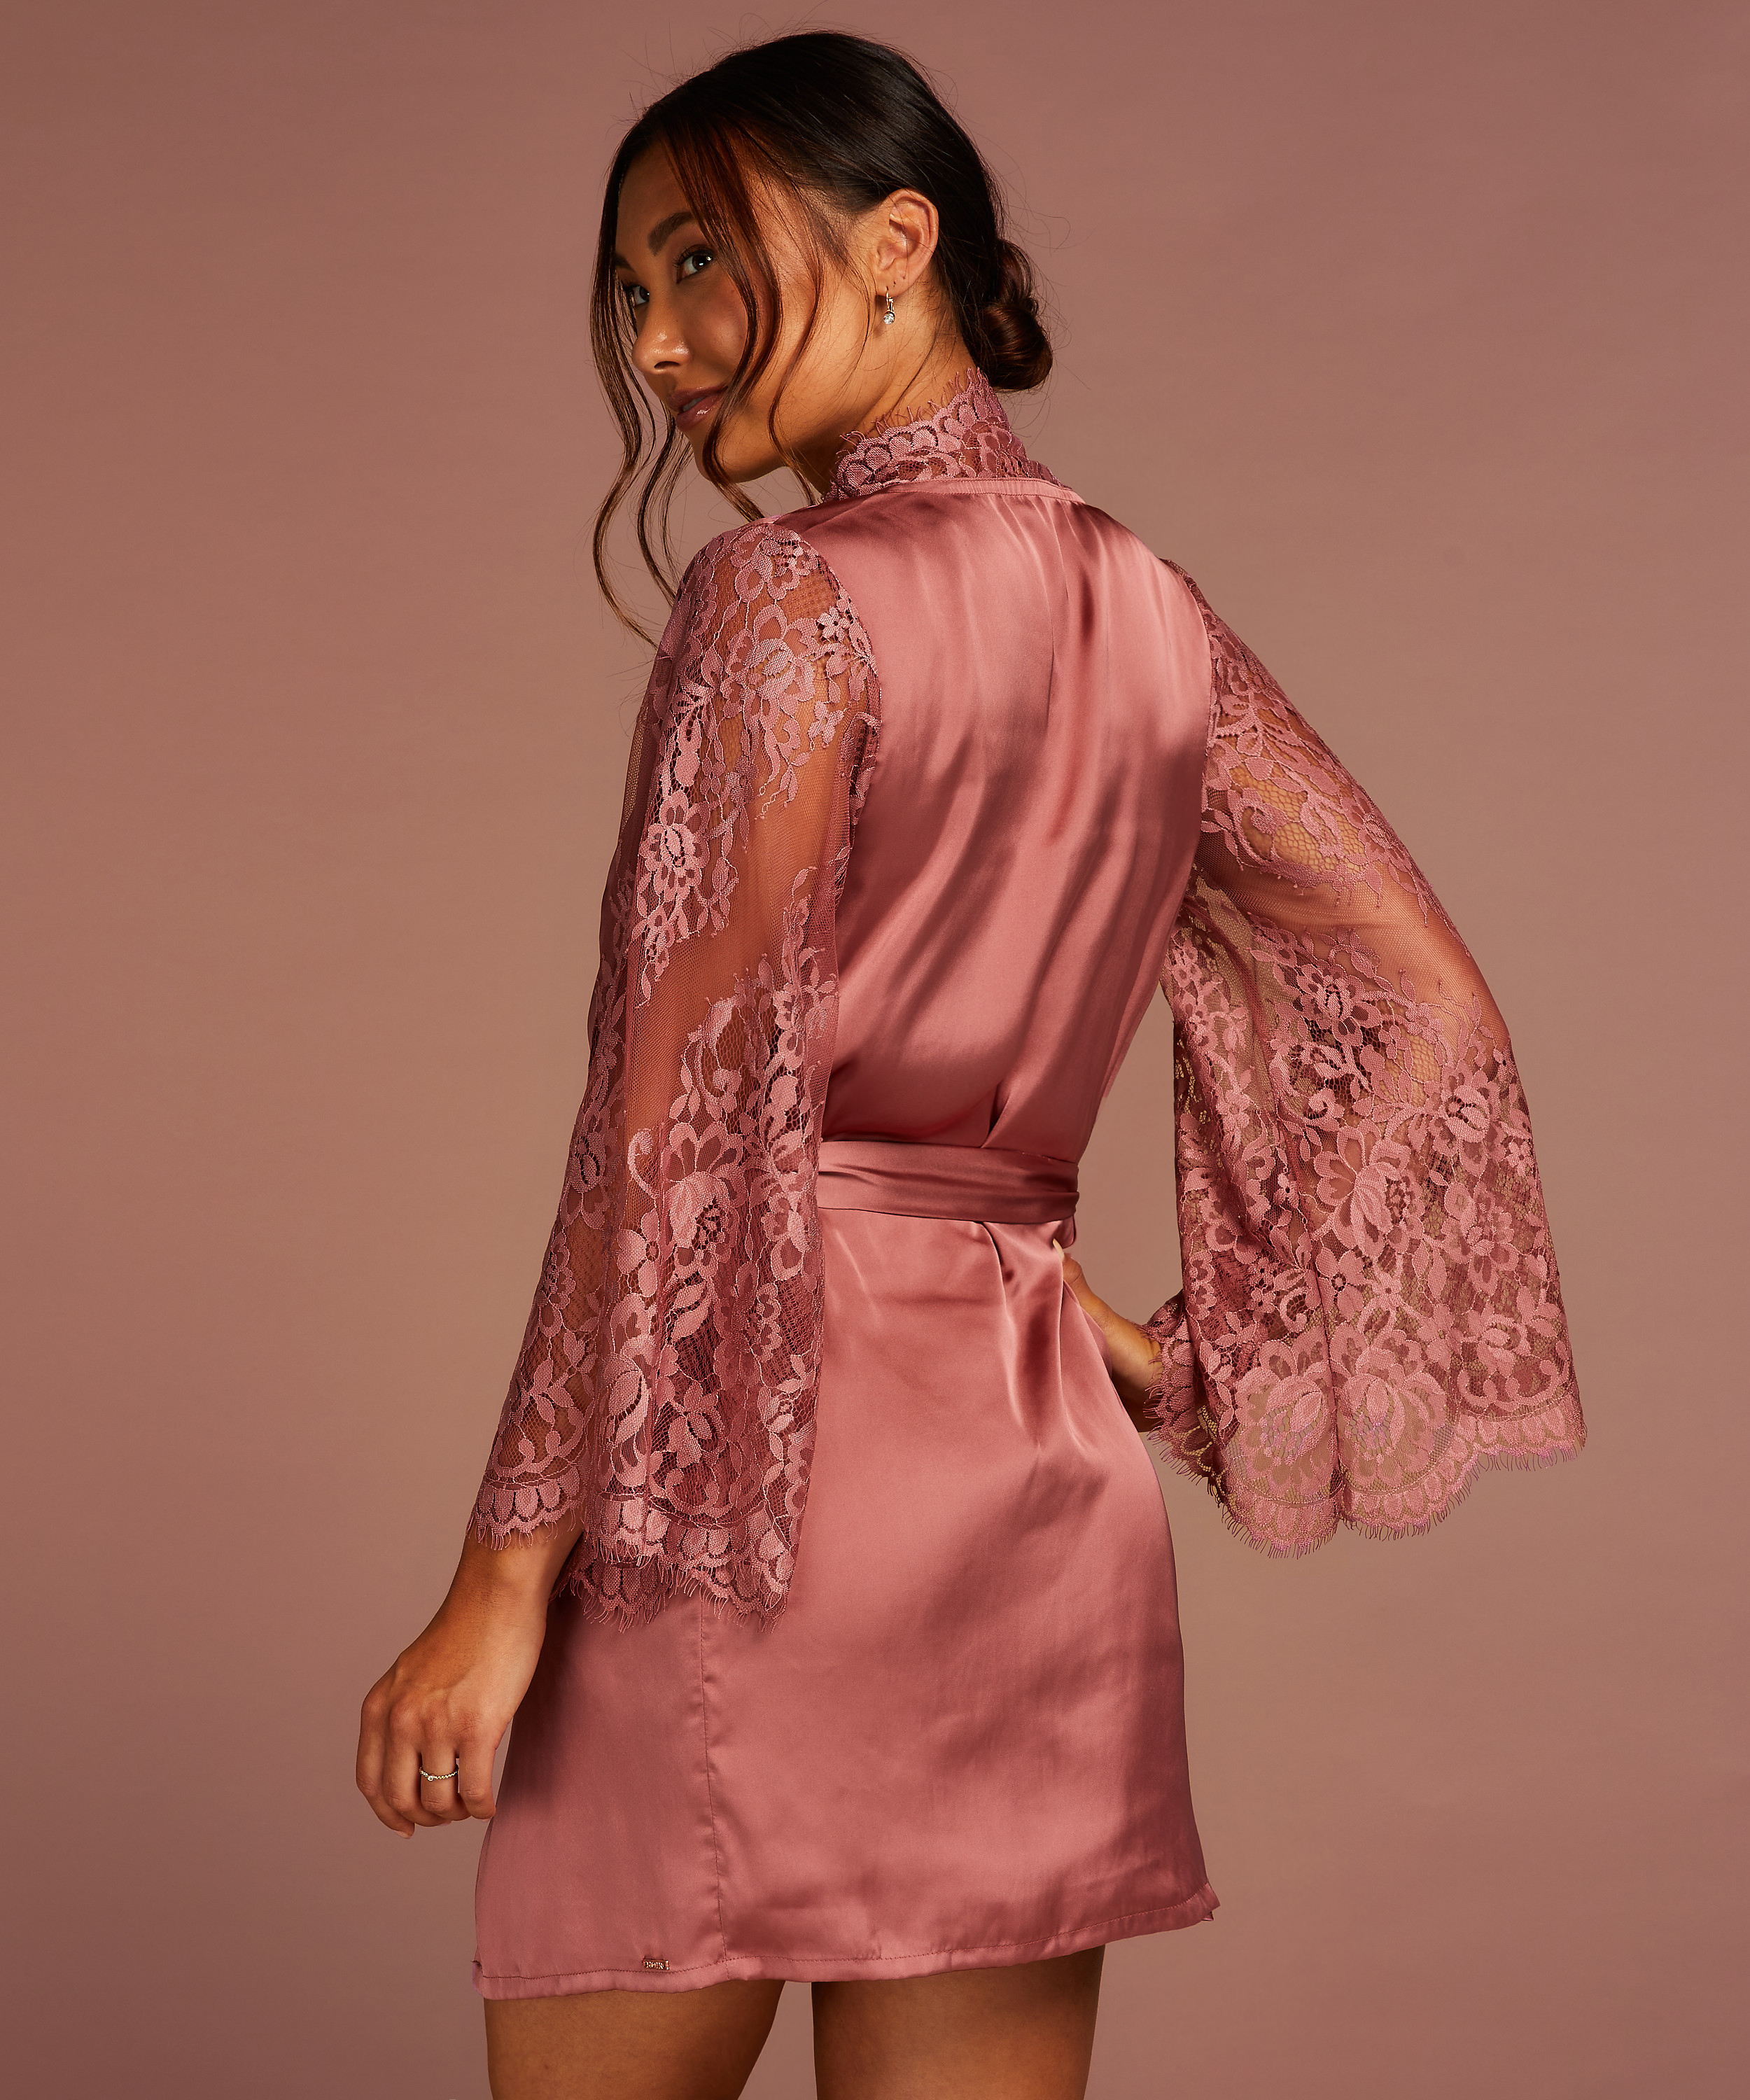 Hunkemöller All - Nachtwäsche Kimono Lace für 49.99€ - Alle Over